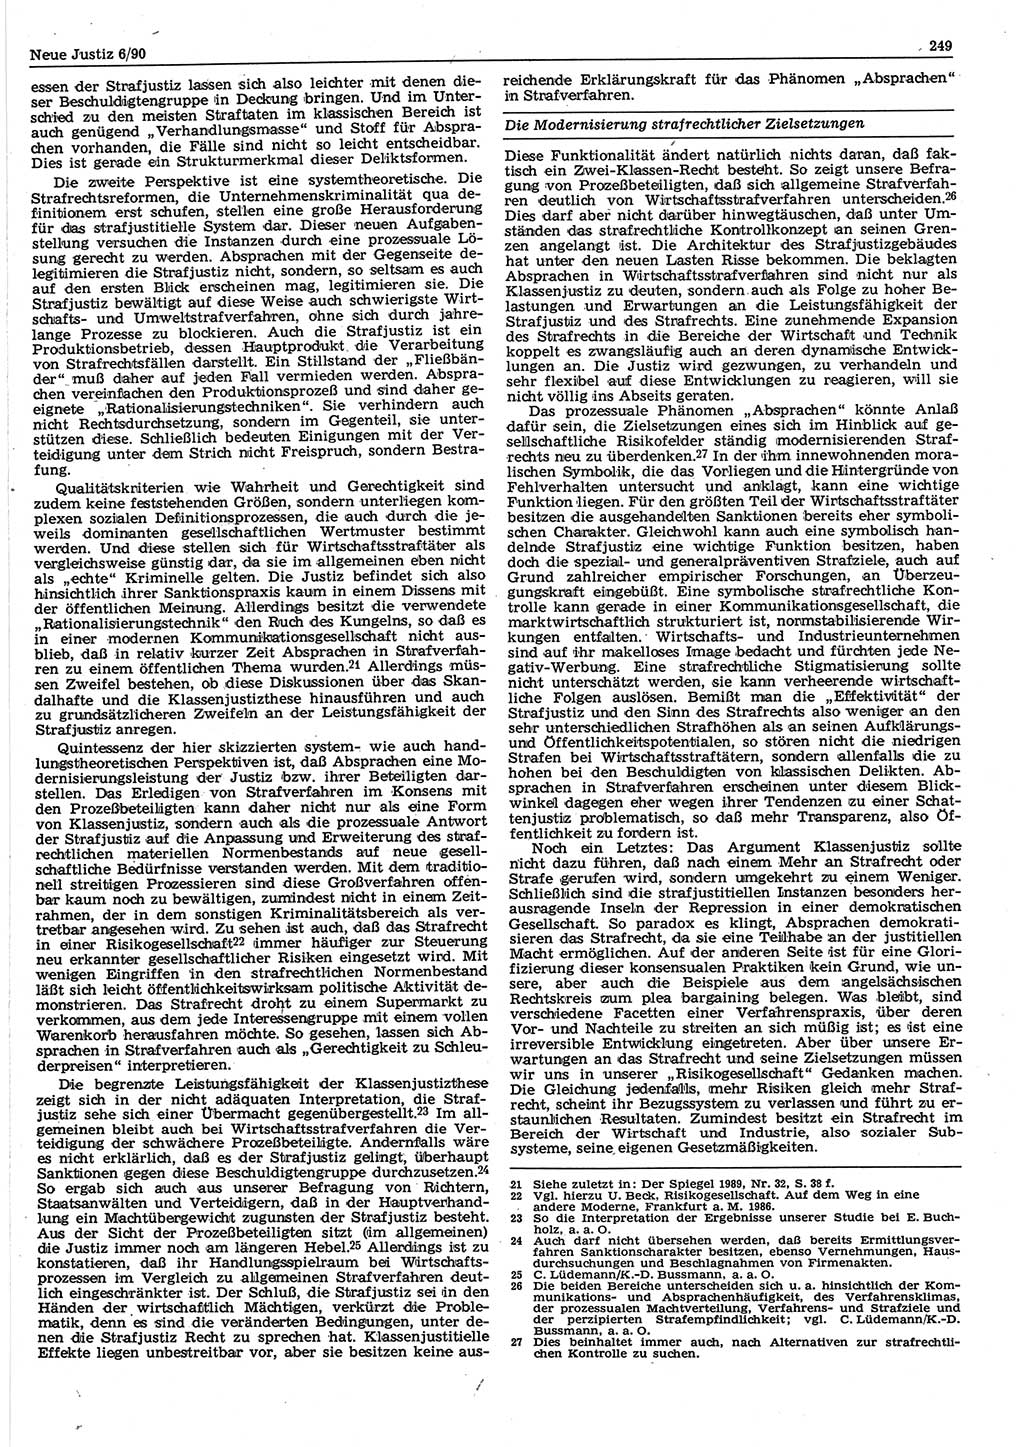 Neue Justiz (NJ), Zeitschrift für Rechtsetzung und Rechtsanwendung [Deutsche Demokratische Republik (DDR)], 44. Jahrgang 1990, Seite 249 (NJ DDR 1990, S. 249)